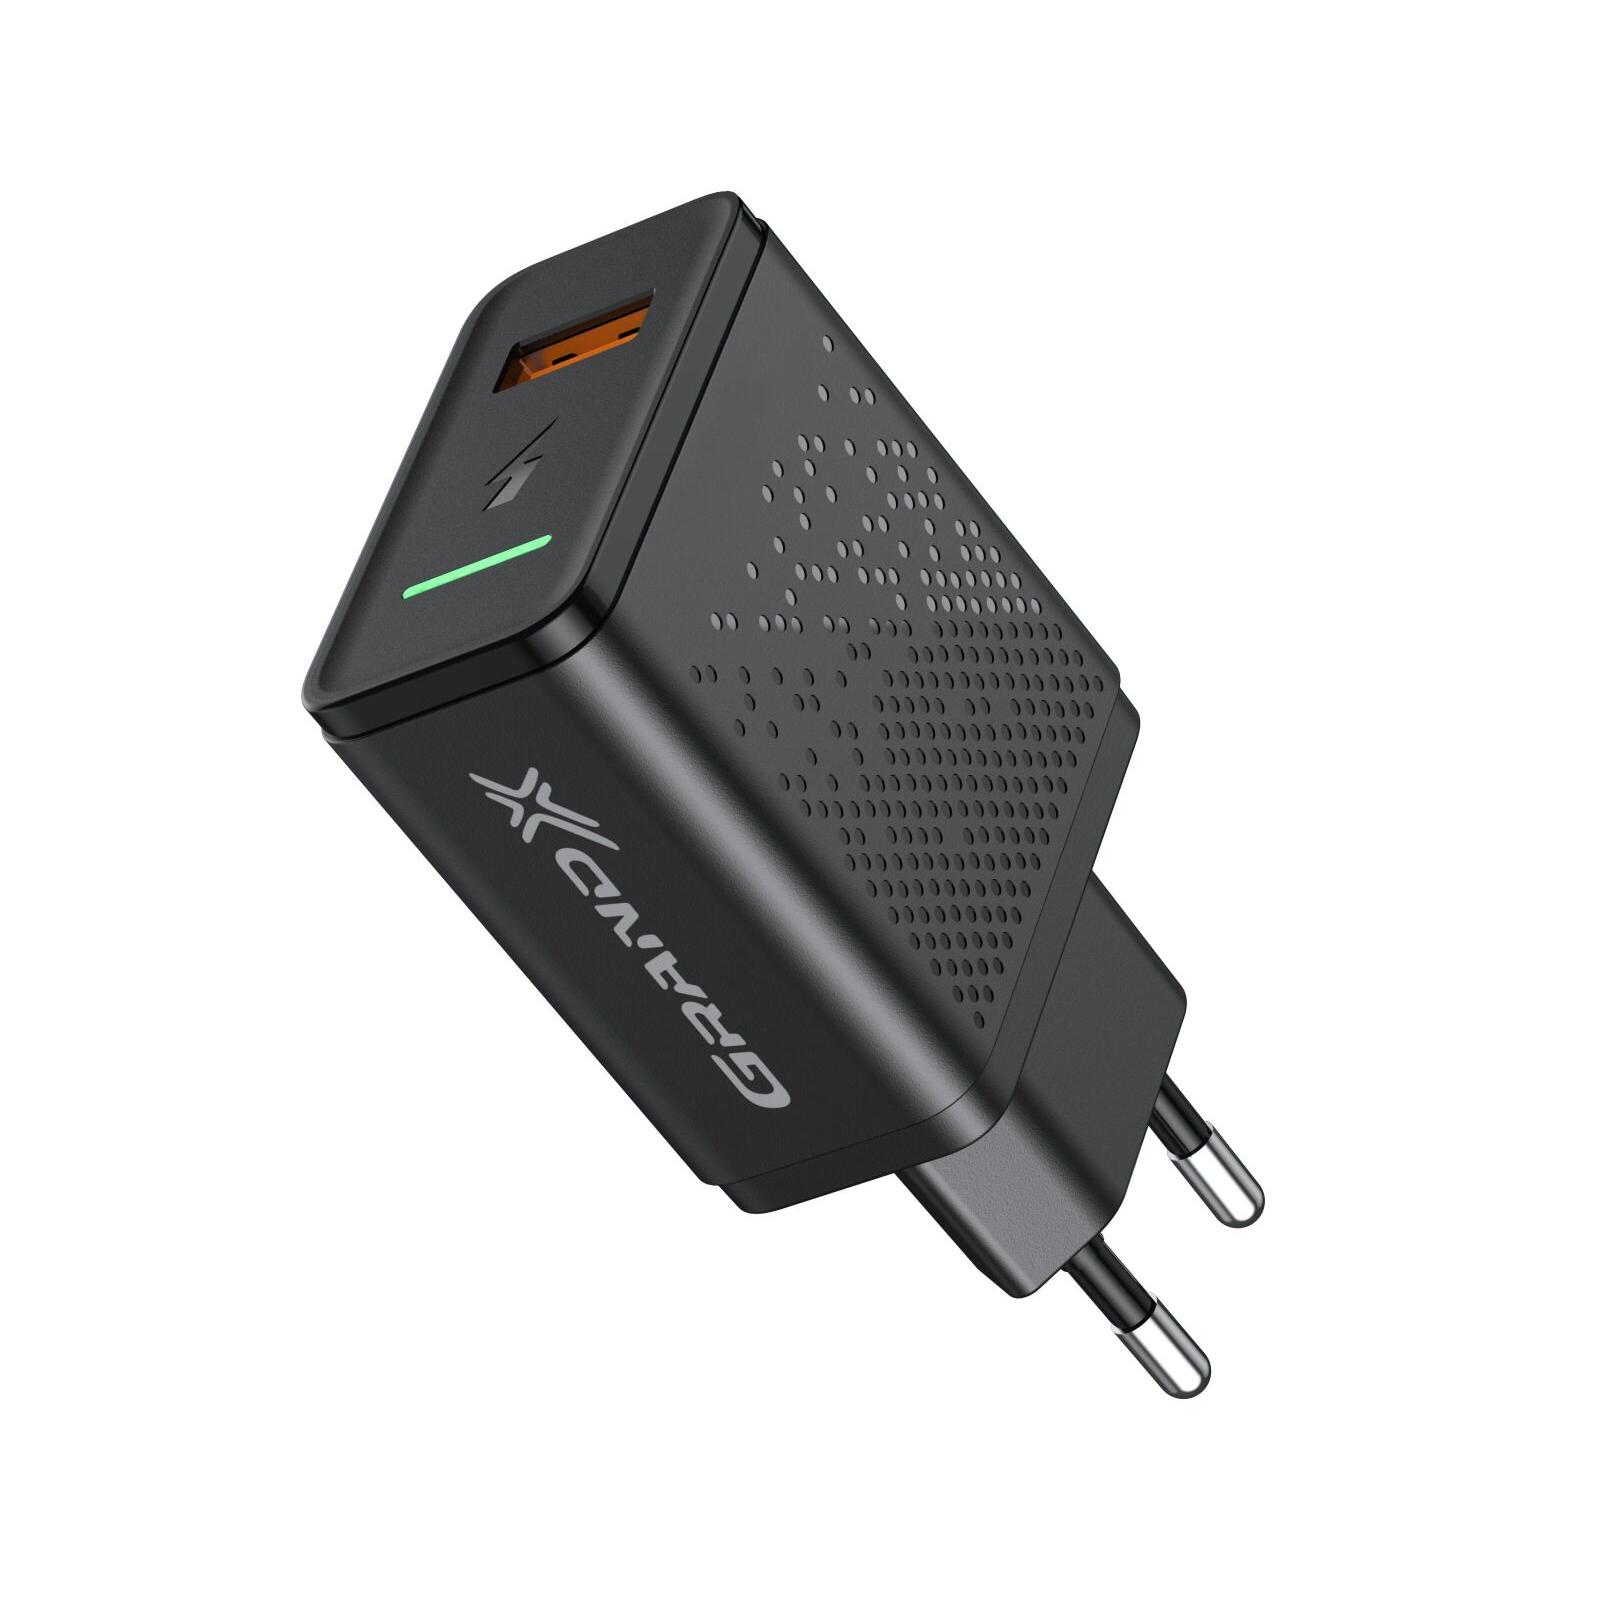 Зарядний пристрій Grand-X Fast Charge 5-в-1 QC 3.0, AFC, SCP,FCP, VOOC, 1 USB 22.5W (CH-850) зображення 3